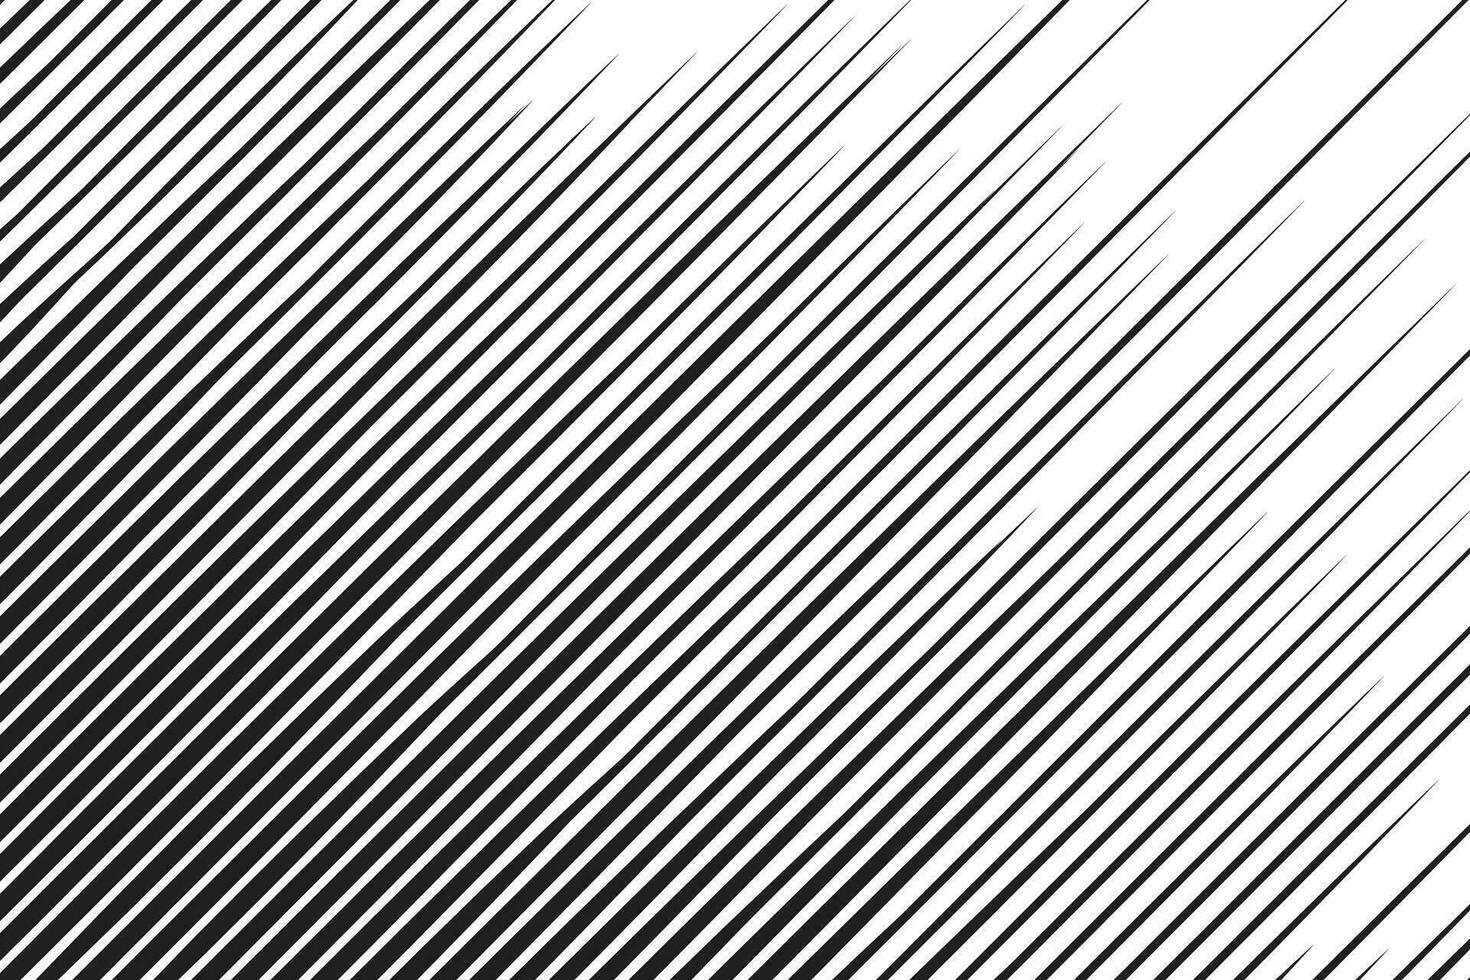 mano dibujado cómic resumen movimiento velocidad línea enfocar efecto en segundo plano vector